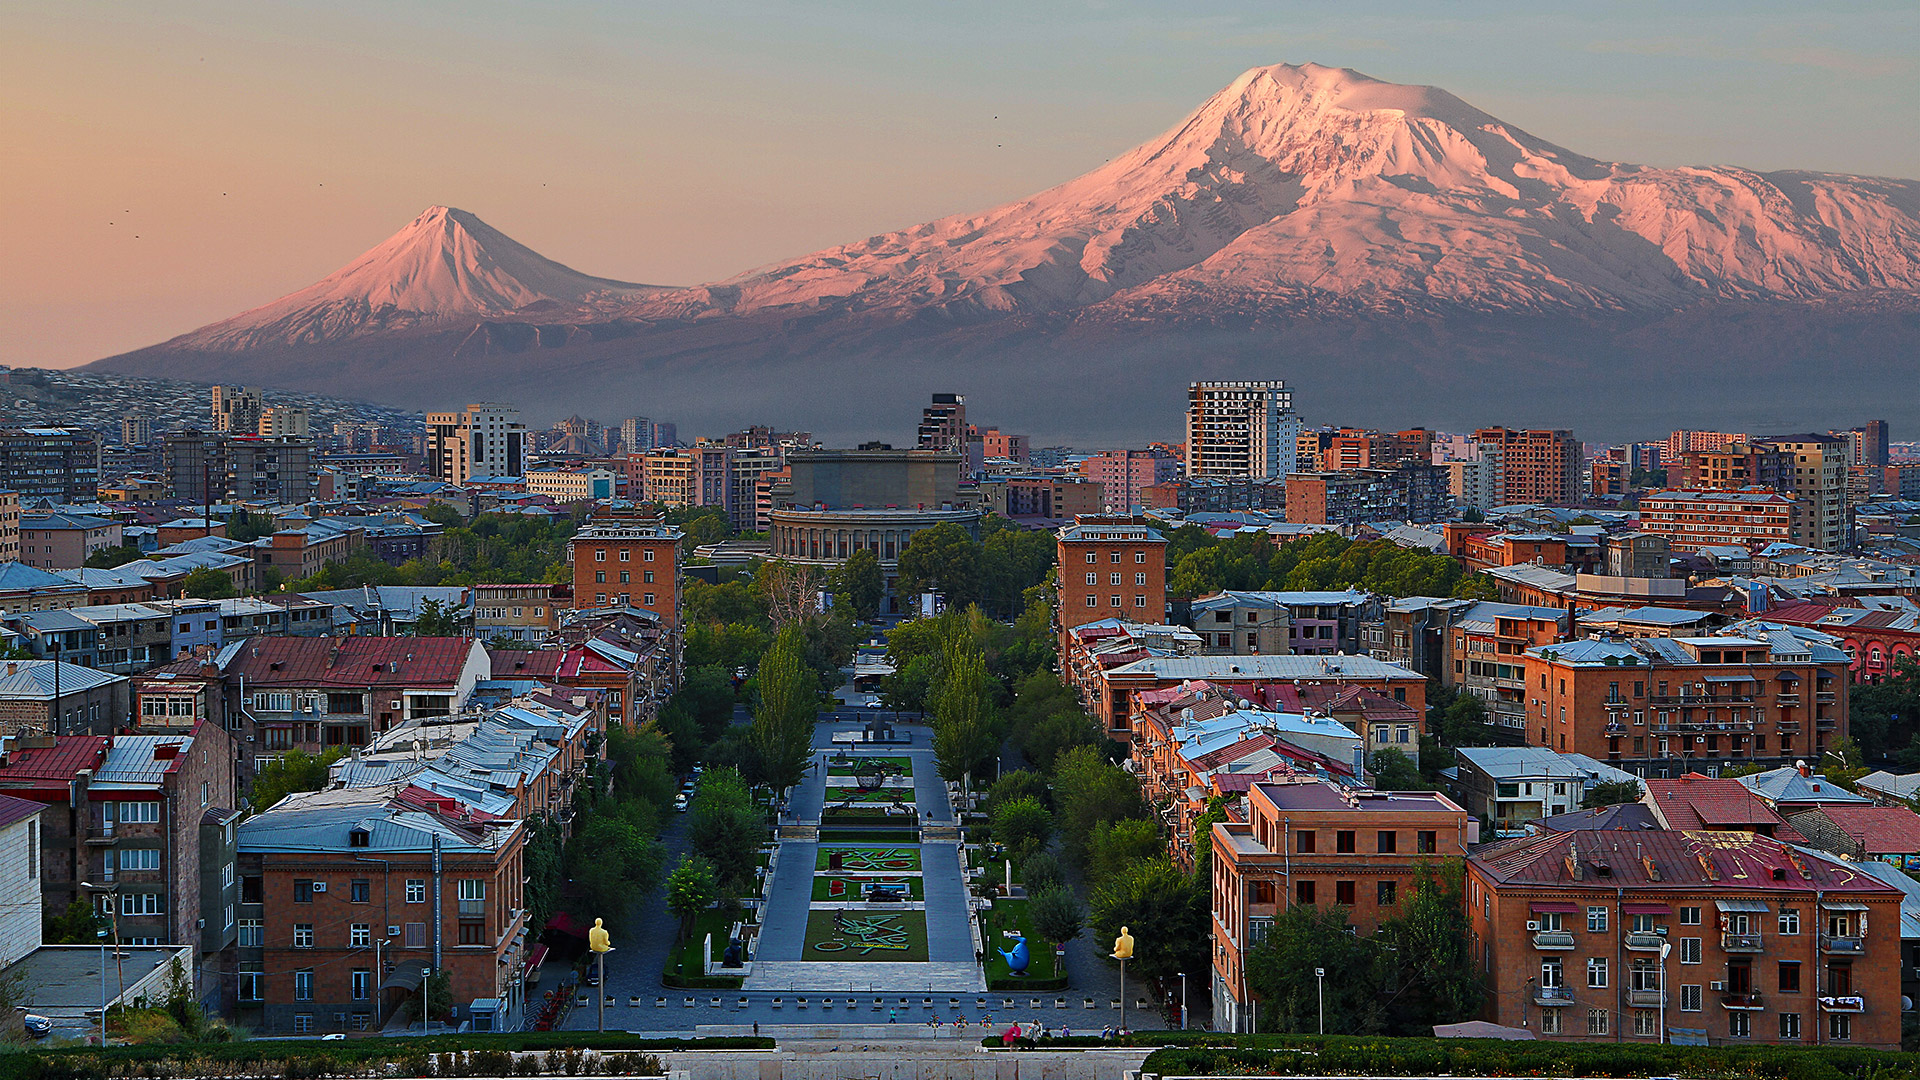 Мал, да удал: e-commerce в Армении «едет» на автомобилях